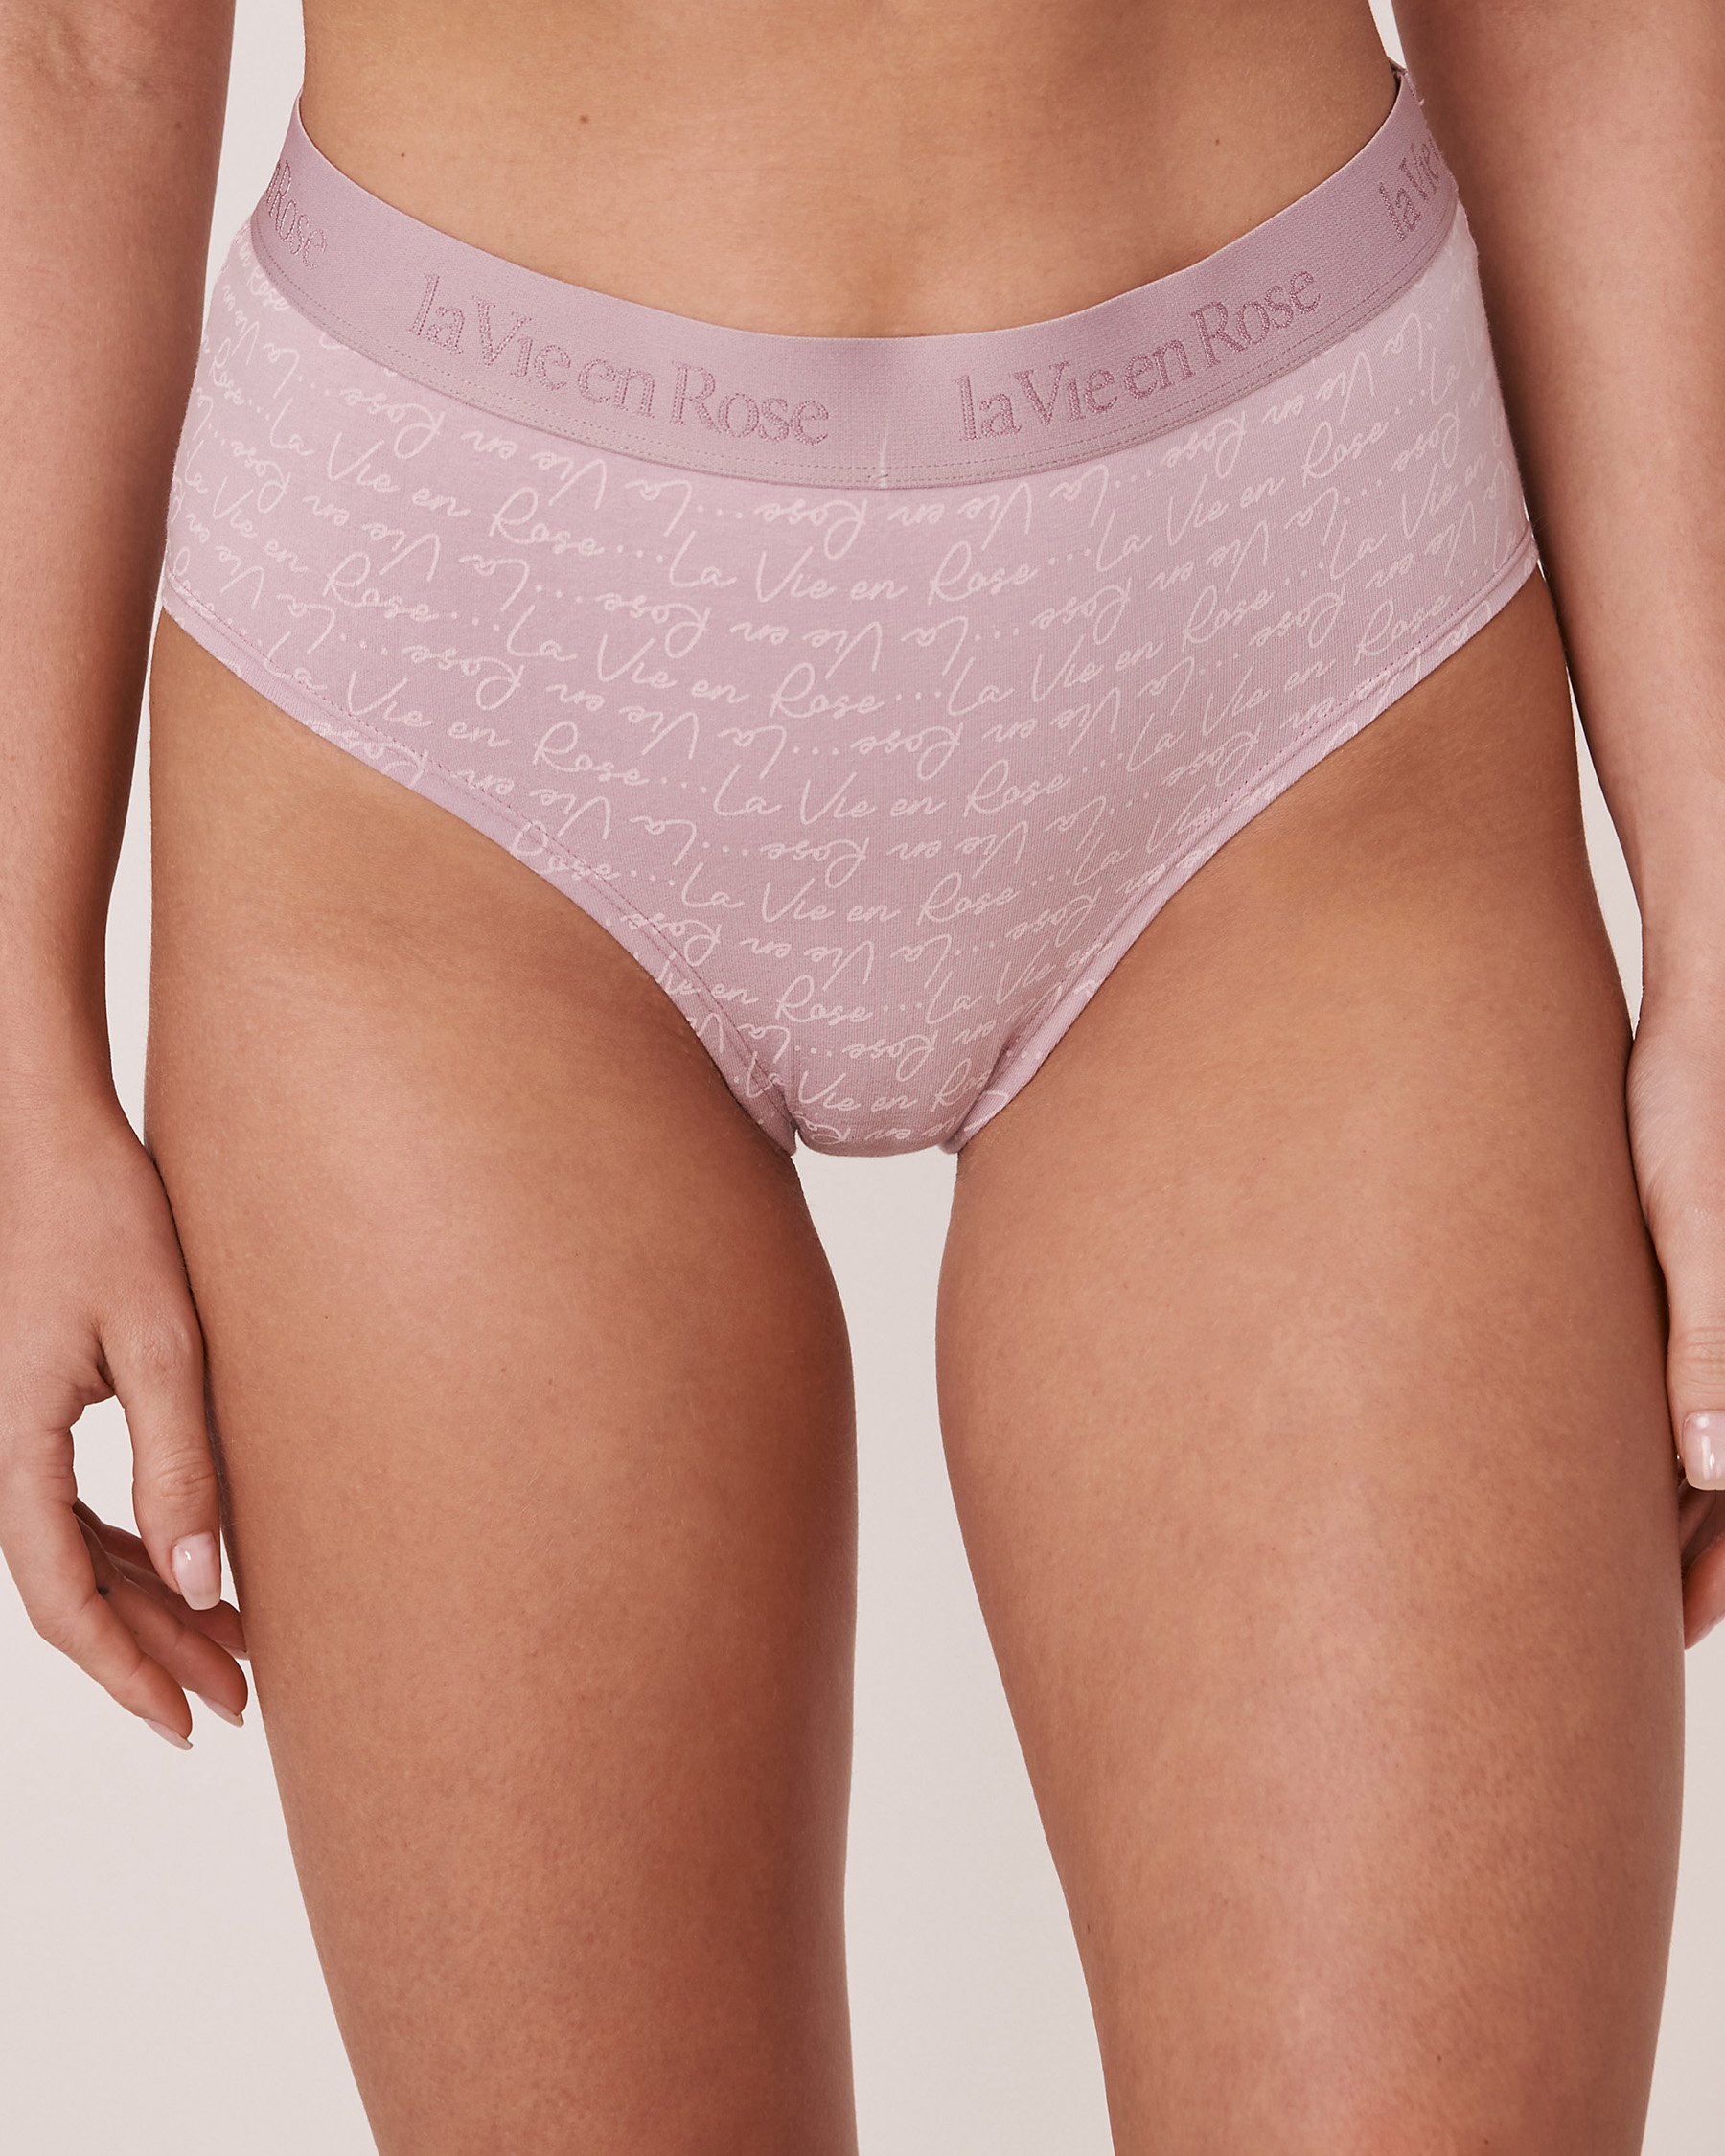 LA VIE EN ROSE Culotte bikini taille haute coton et bande élastique logo Imprimé logo 20100187 - Voir1